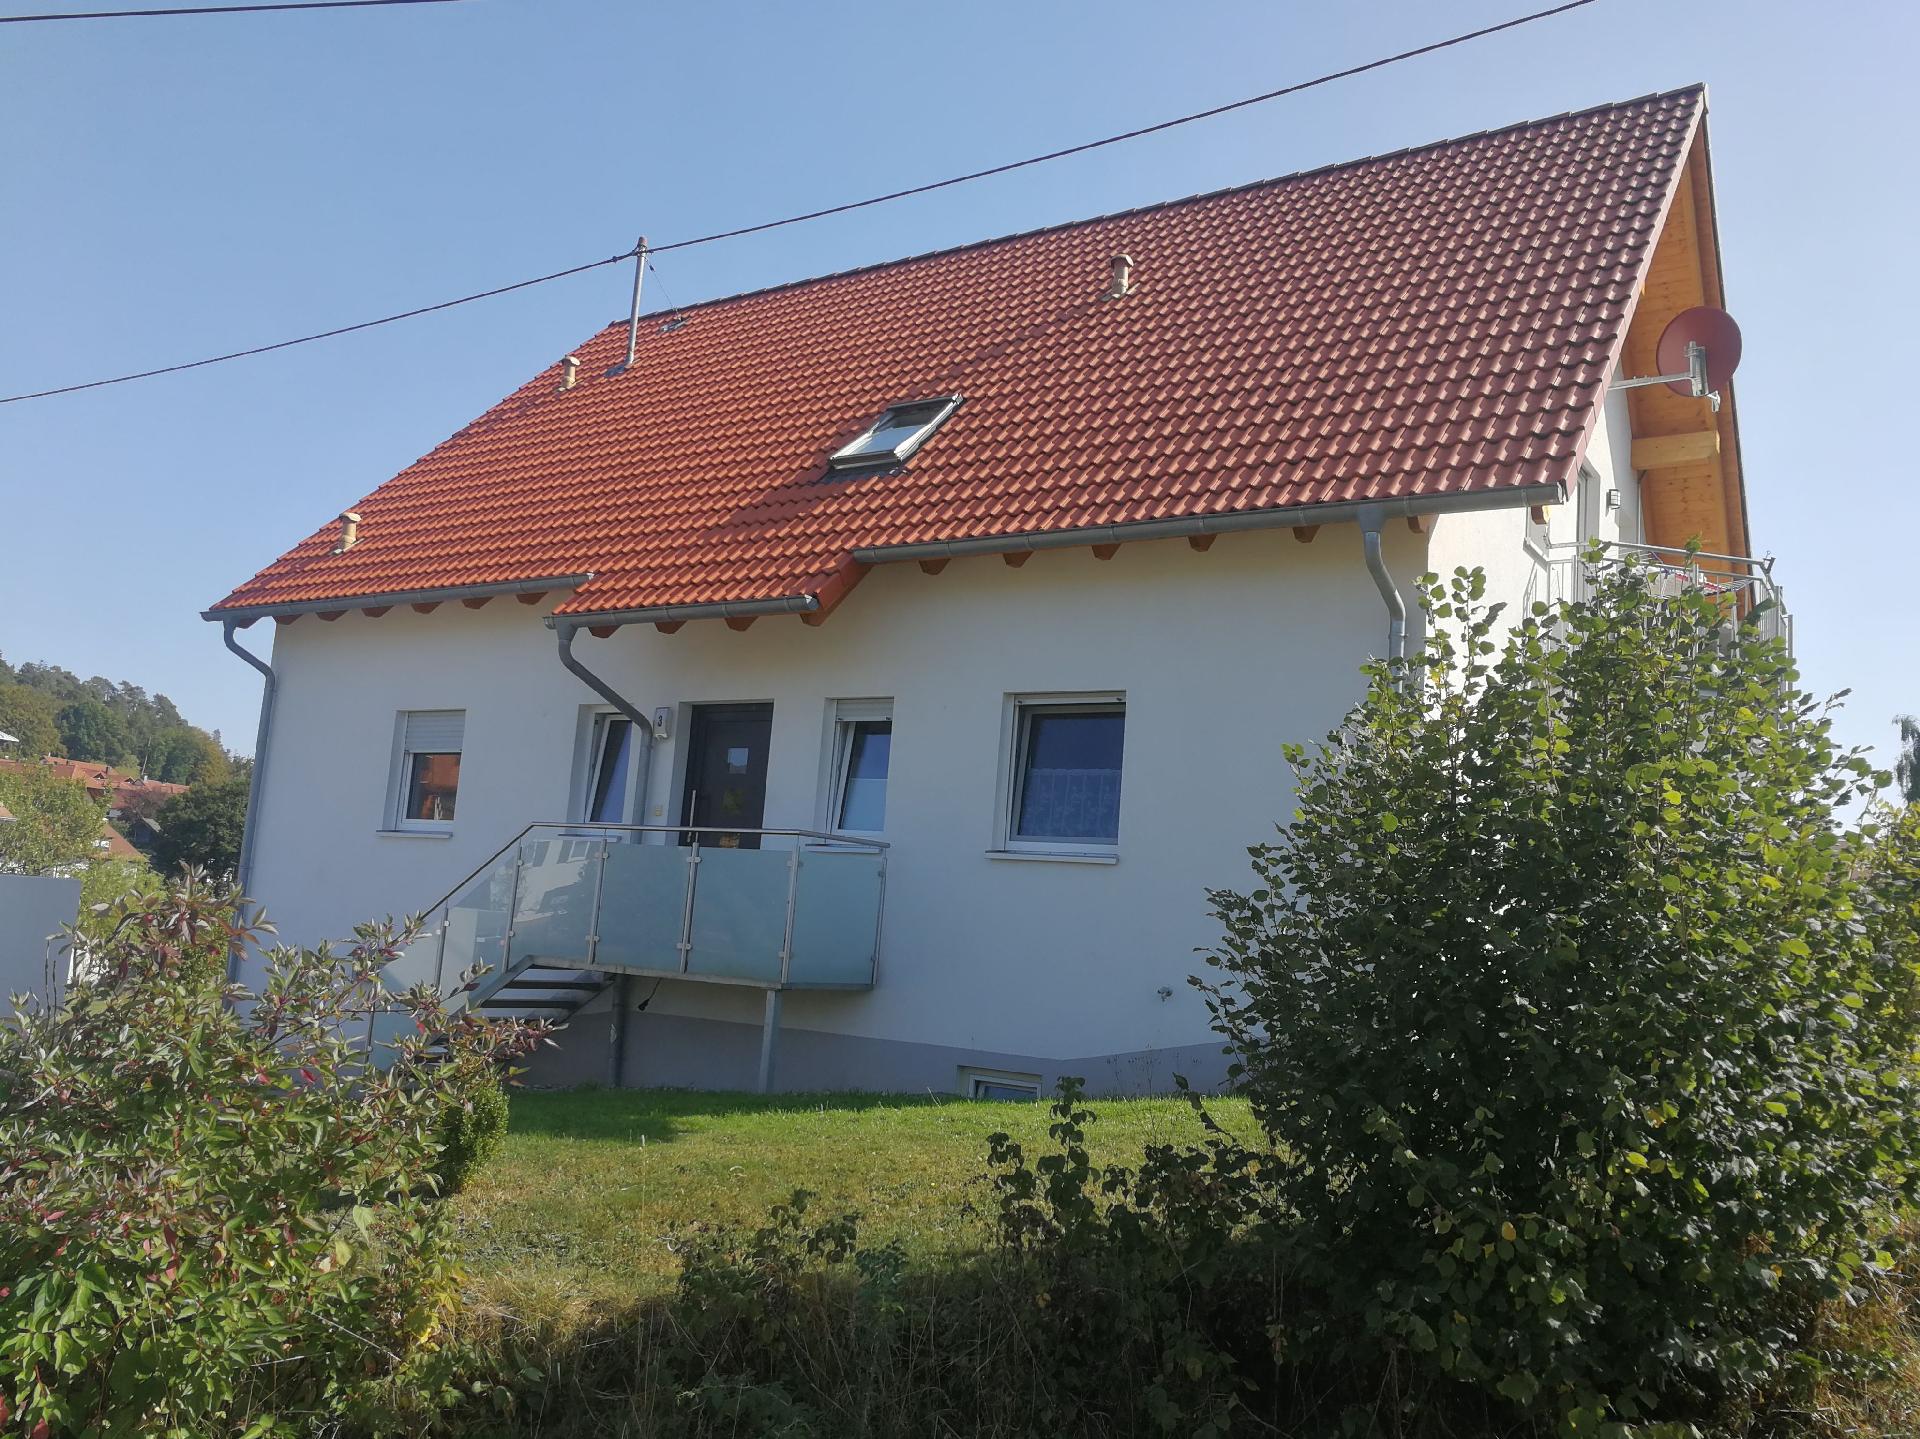 Wohnung in Speßhardt mit Terrasse, Grill und   Calw